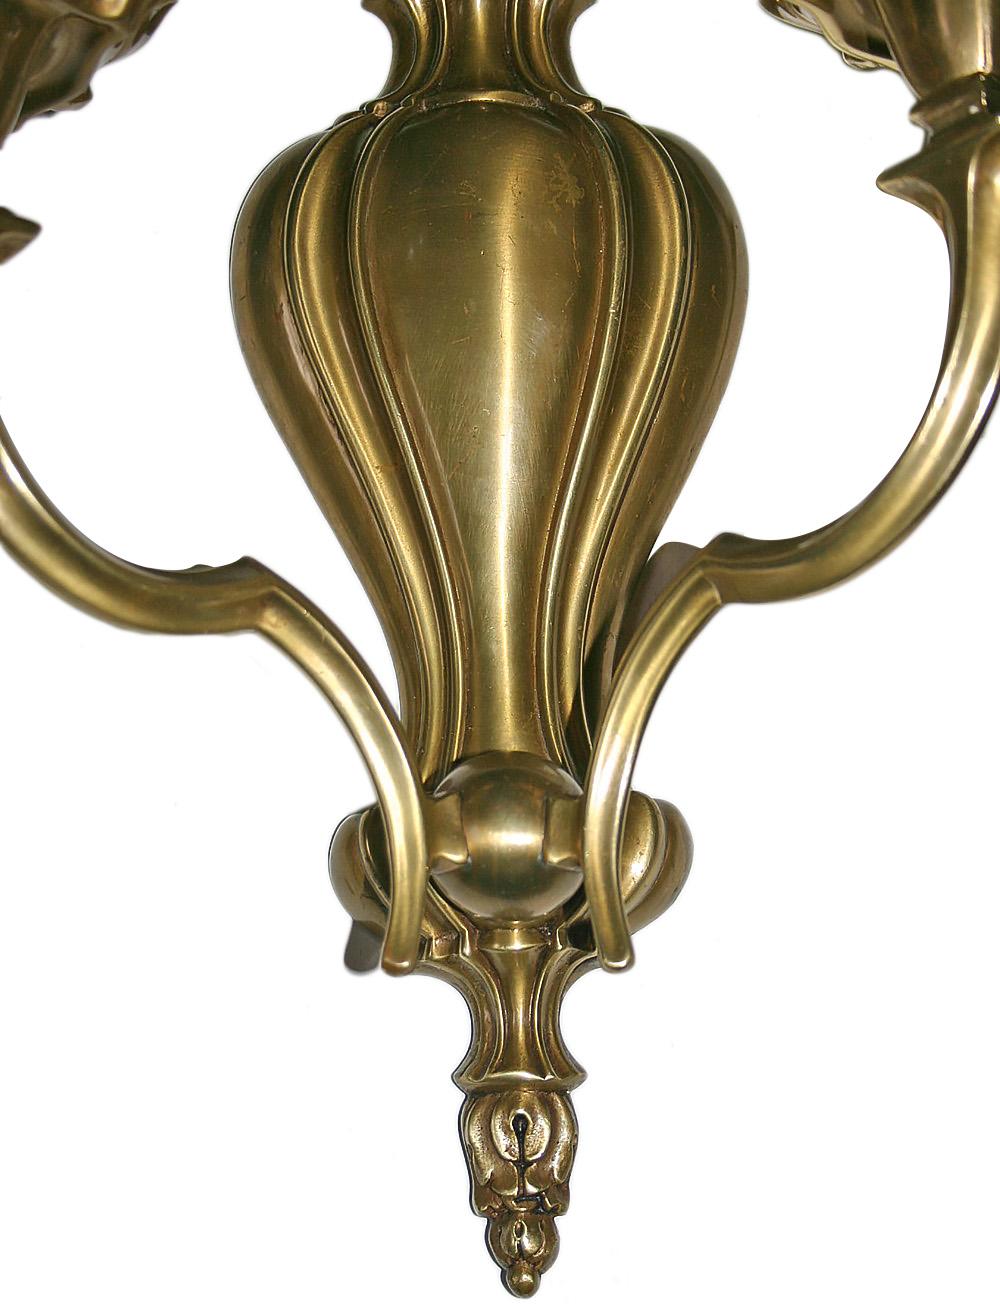 Zwölf doppelarmige Bronzewandleuchter im neoklassizistischen Stil aus den 1940er Jahren. Verkauft in Paaren.

Abmessungen:
Höhe 15